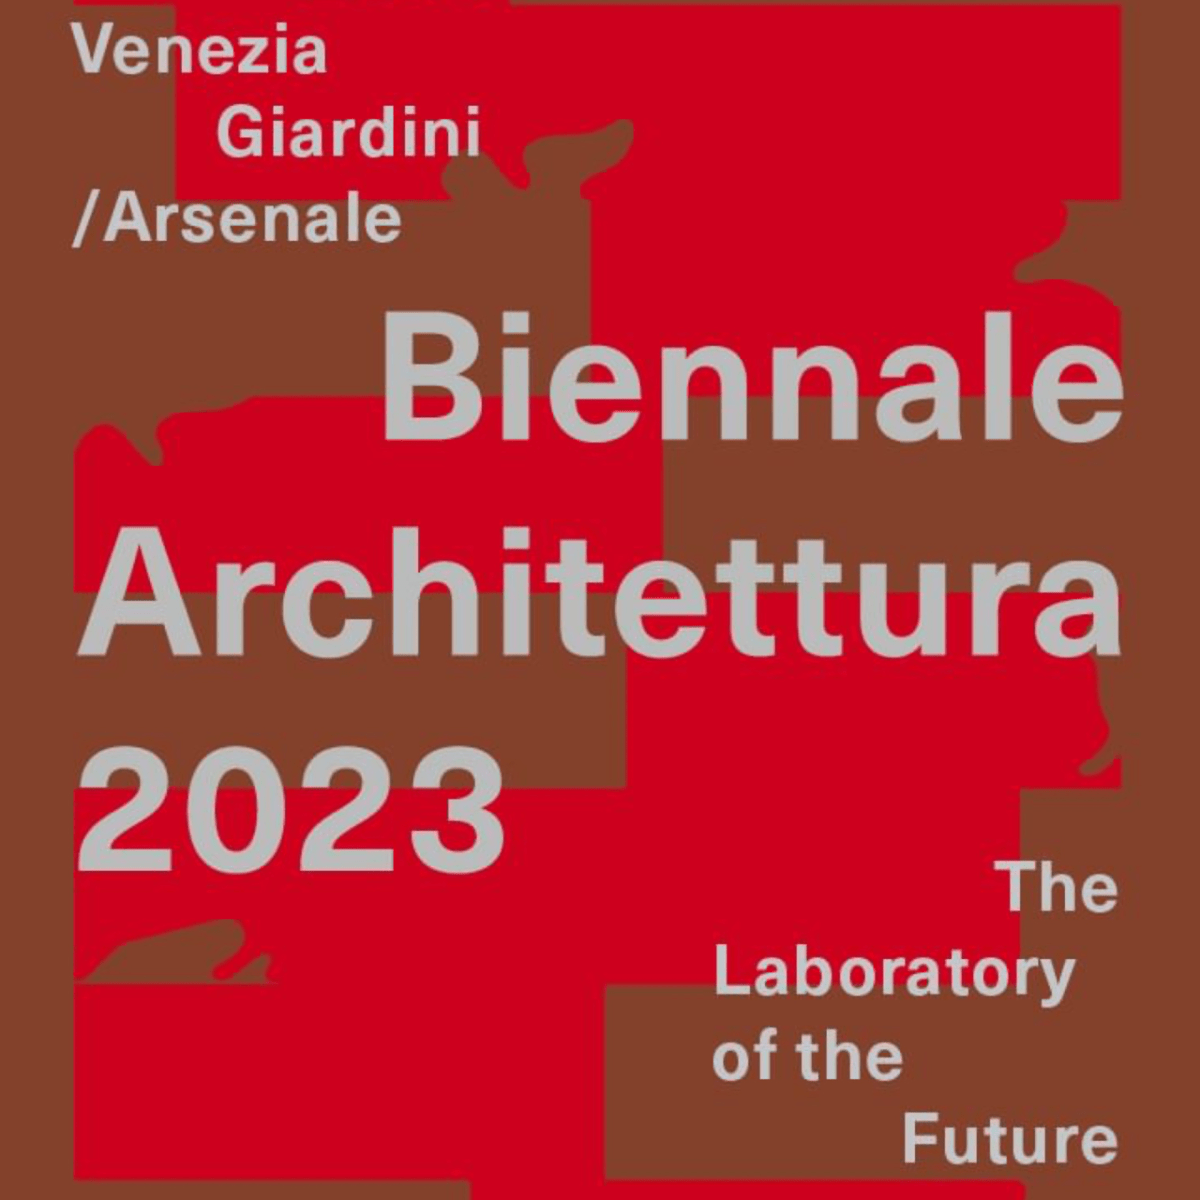 Україна незабаром переможе, Європа вже готується допомагати у відновленні та інтеграції – фон дер Ляєн на Biennale Architettura 2023